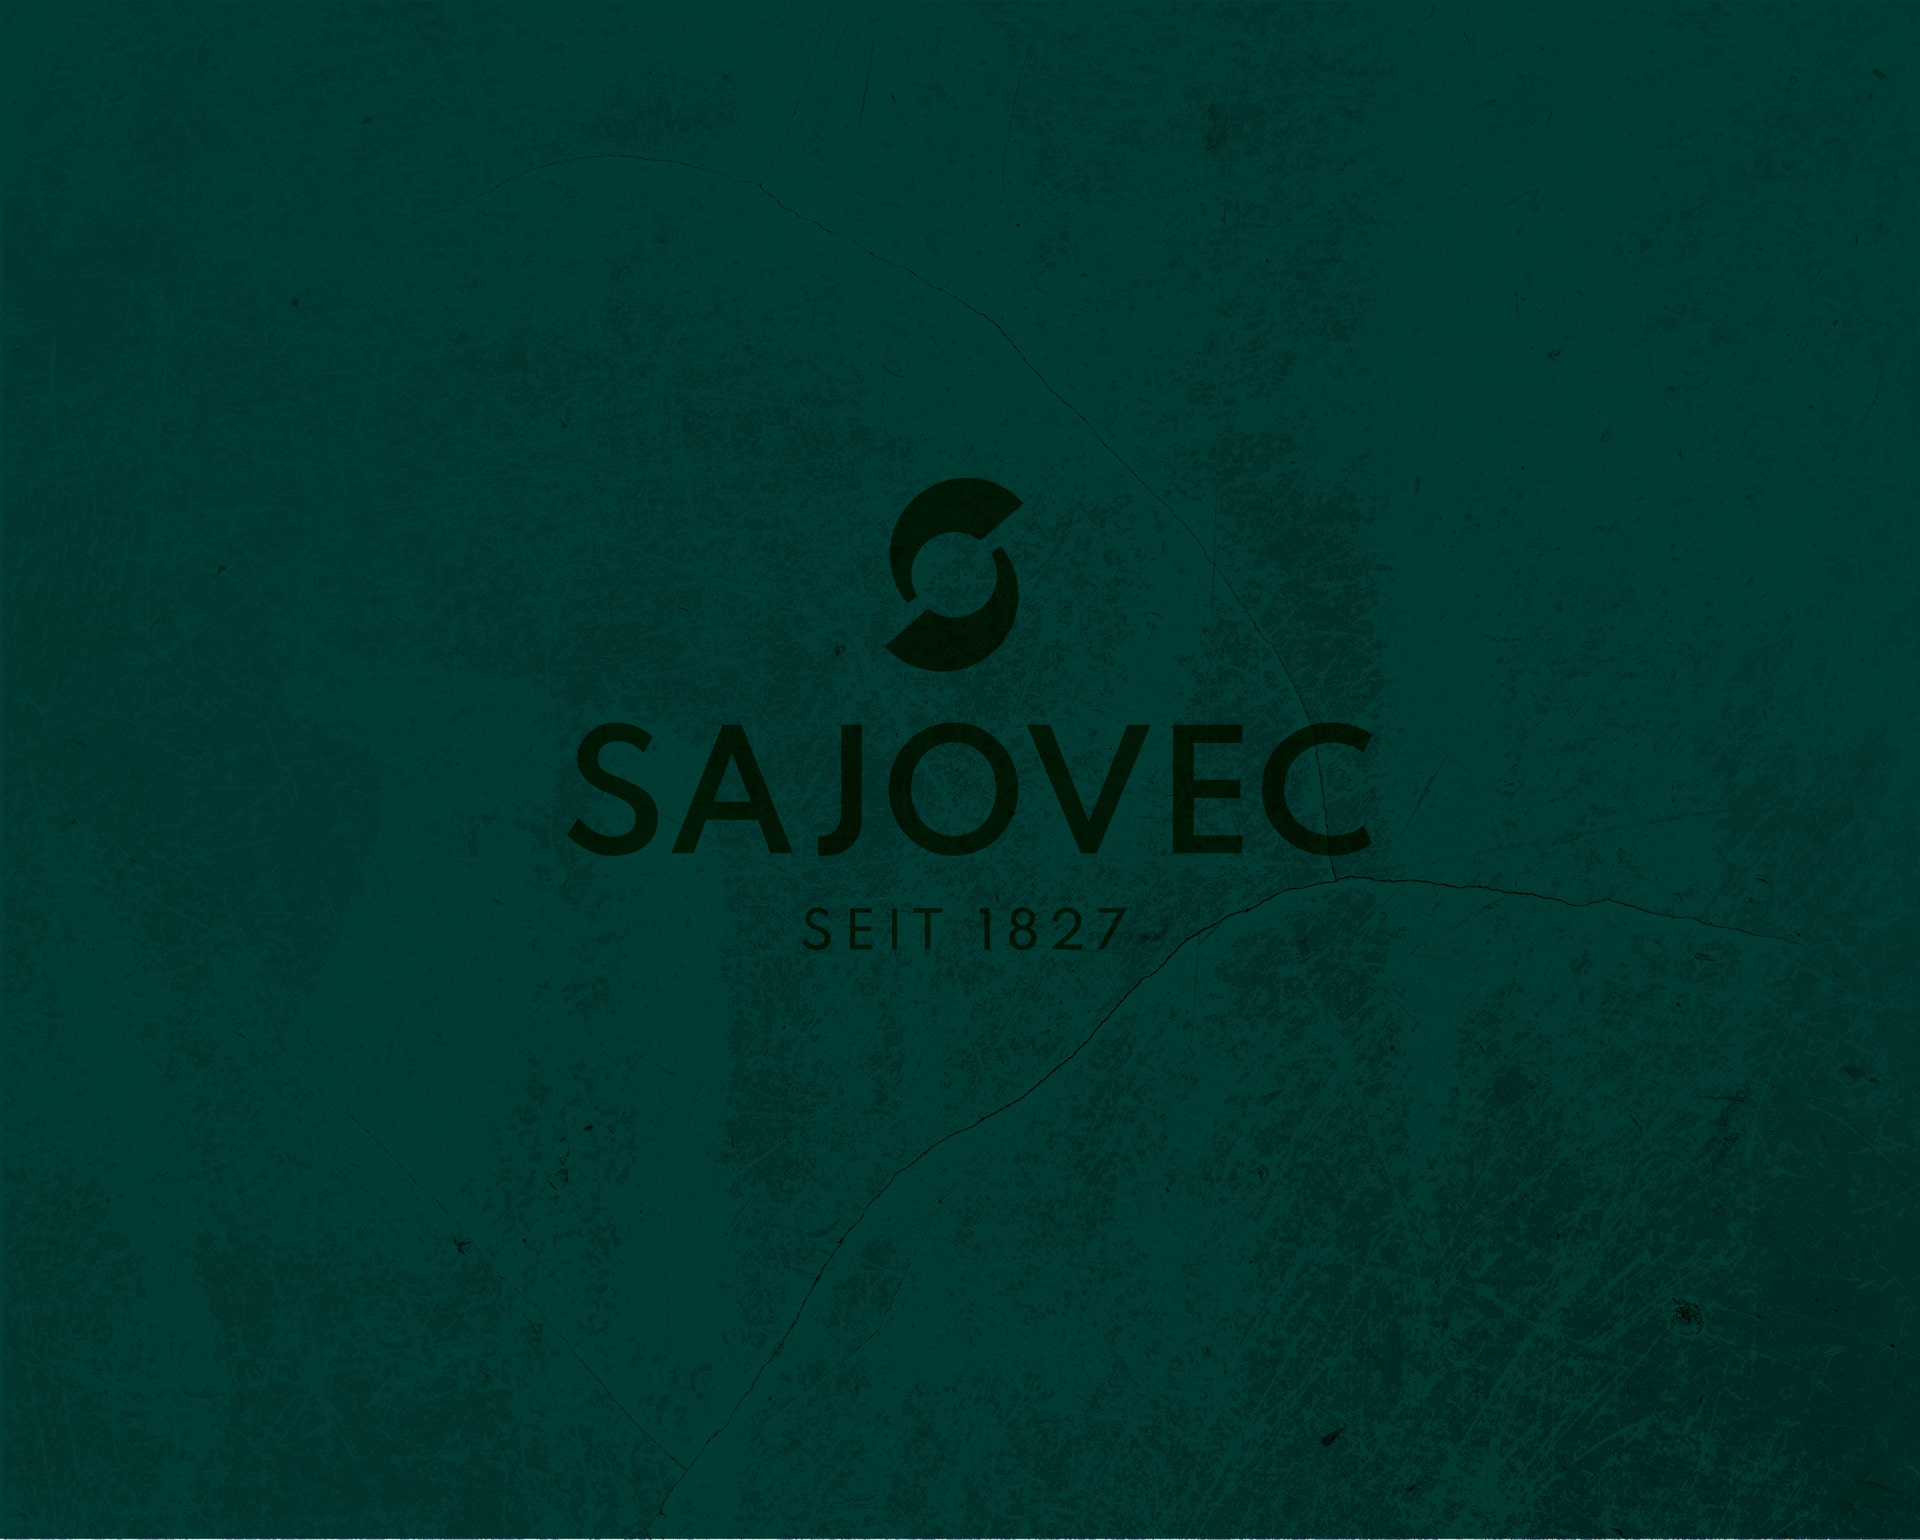 Bild mit dem Logo von Sajovec auf einem grünen Hintergrund